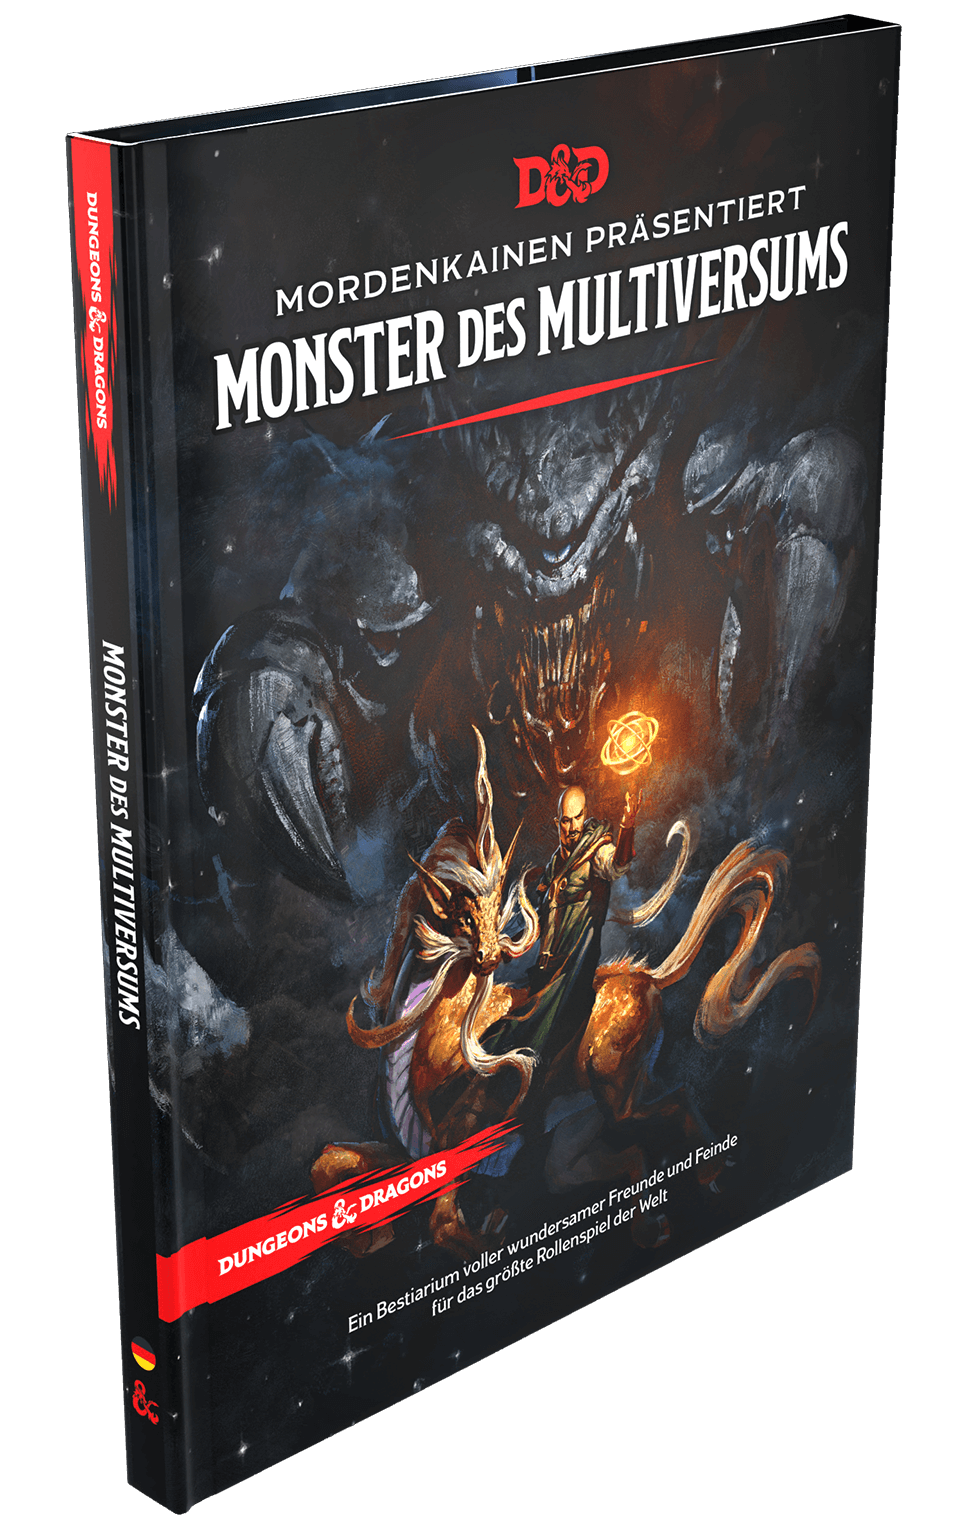 Dungeons & Dragons: Monster des Multiversums